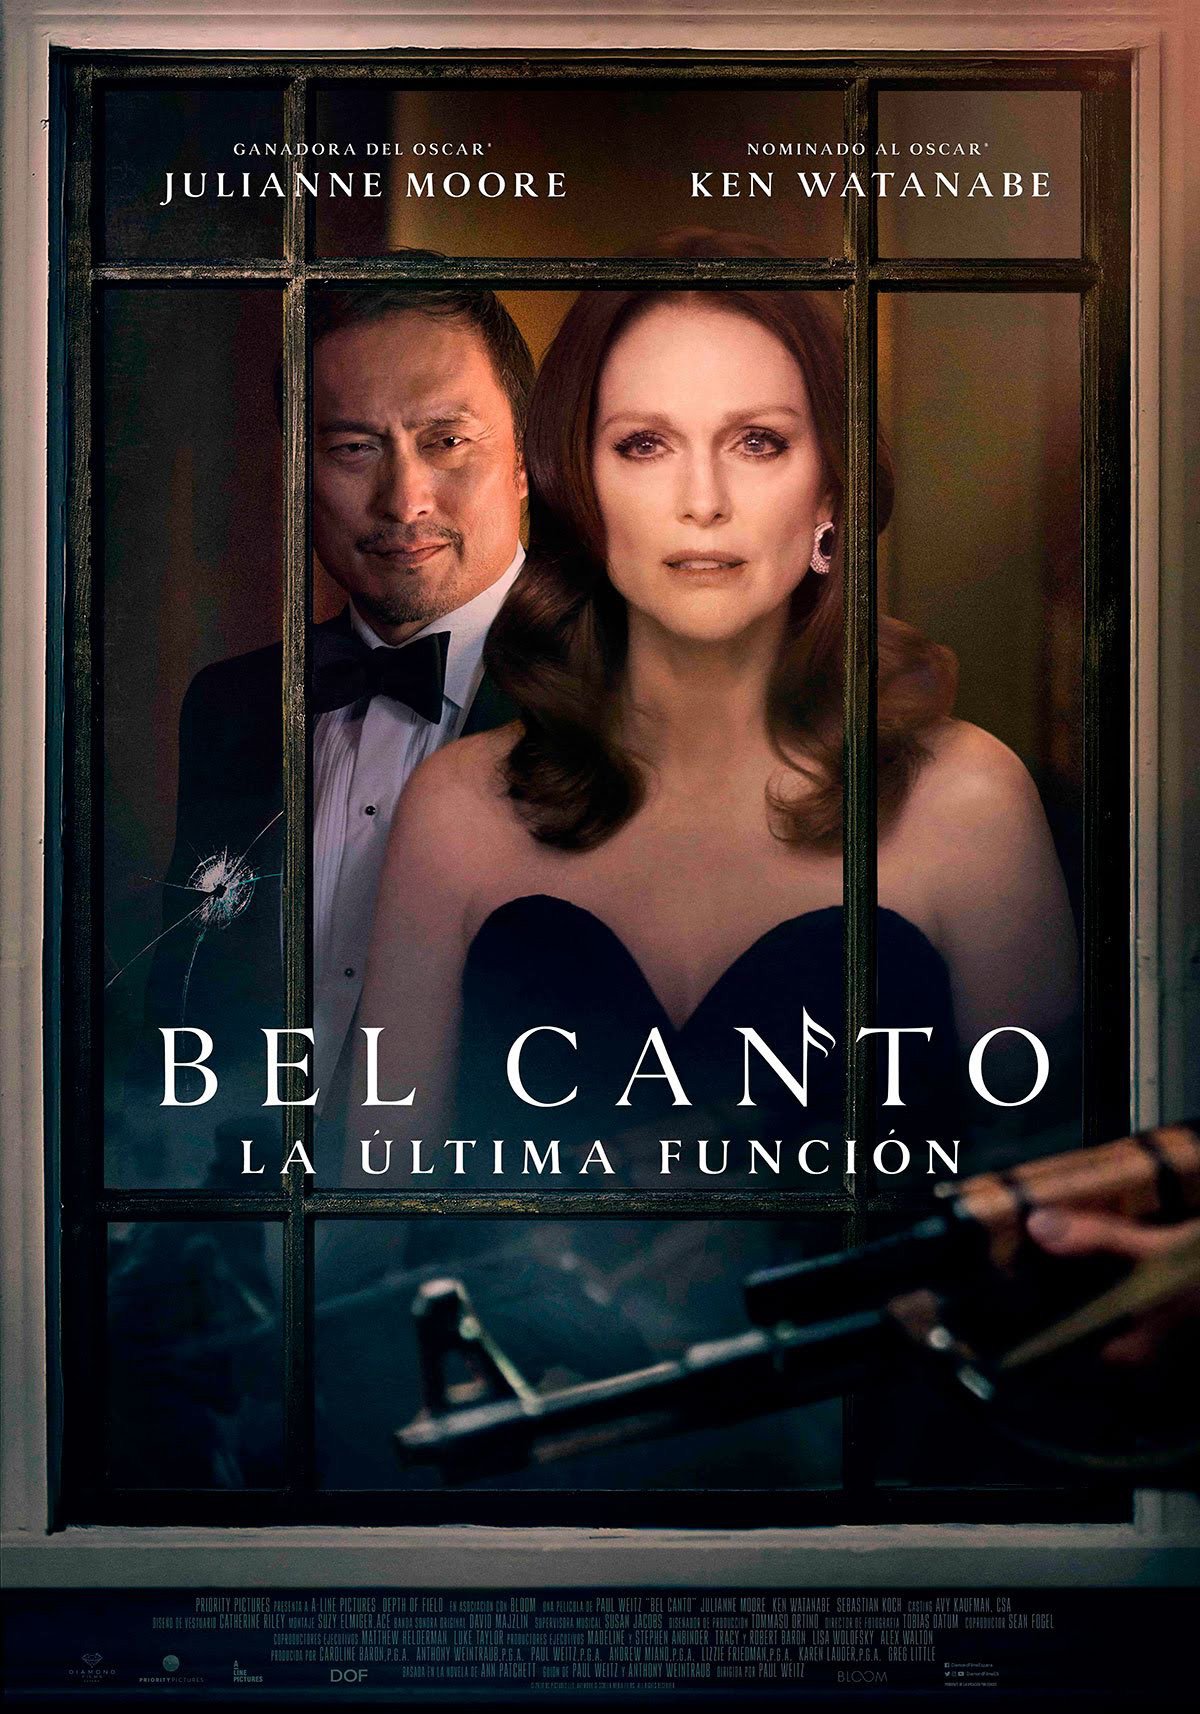 Cartel de Bel Canto (La última función) - Poster 1 - SensaCine.com